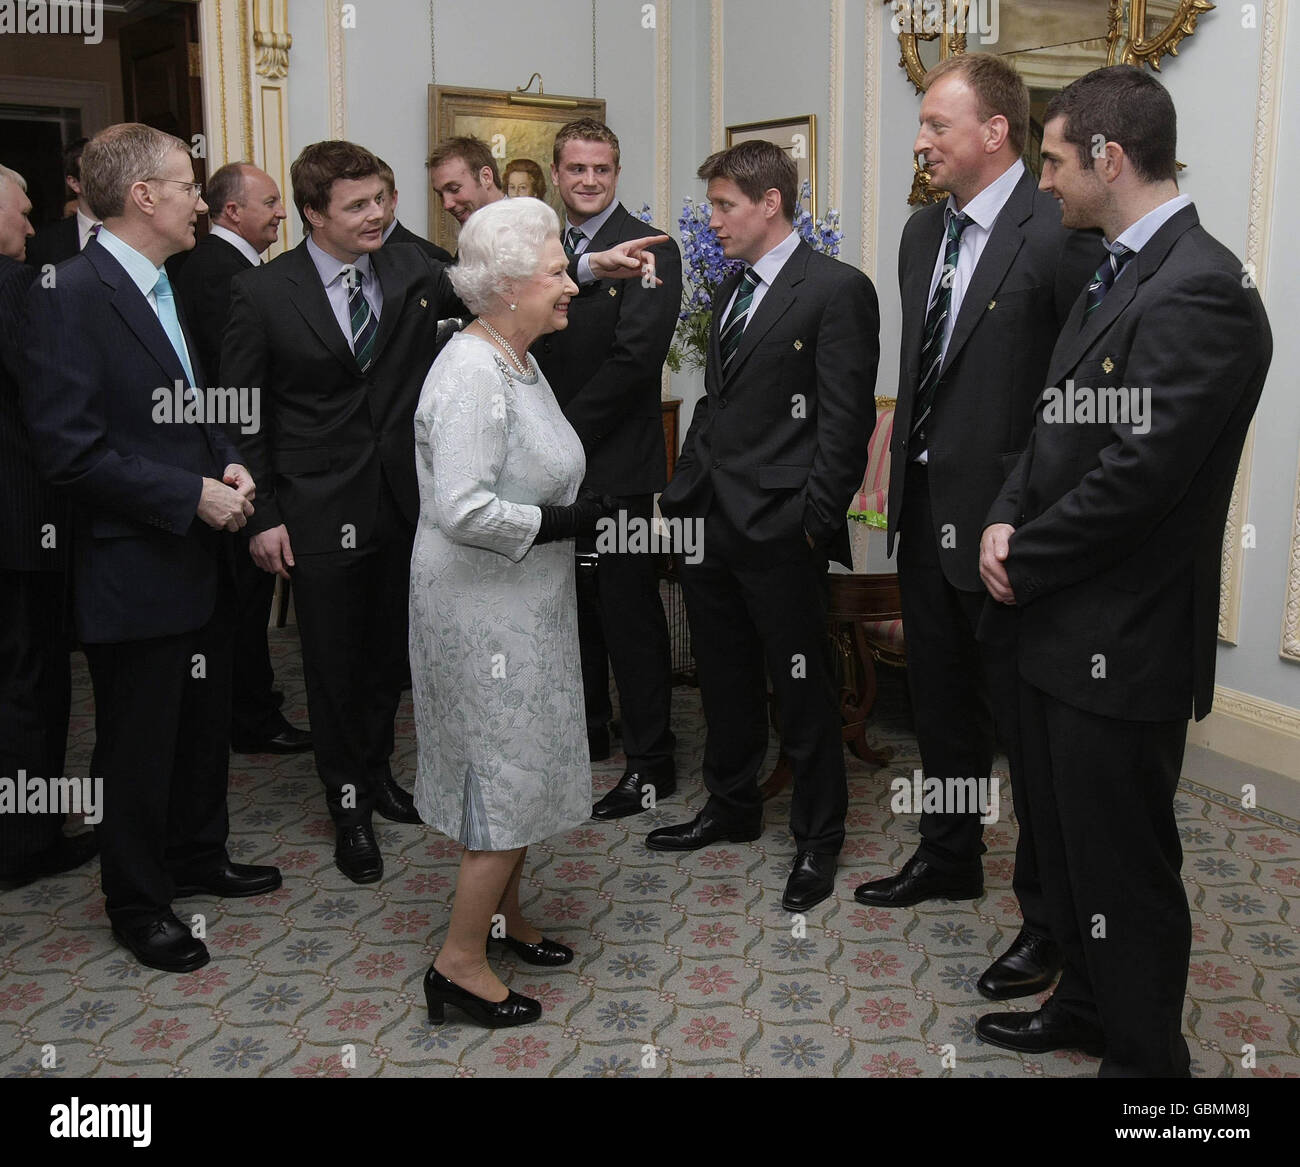 La reine Elizabeth II rencontre des membres de l'équipe irlandaise de rugby à XV 6 Nations du Grand Chelem au château de Hillsborough le deuxième jour de sa visite en Irlande du Nord. Banque D'Images